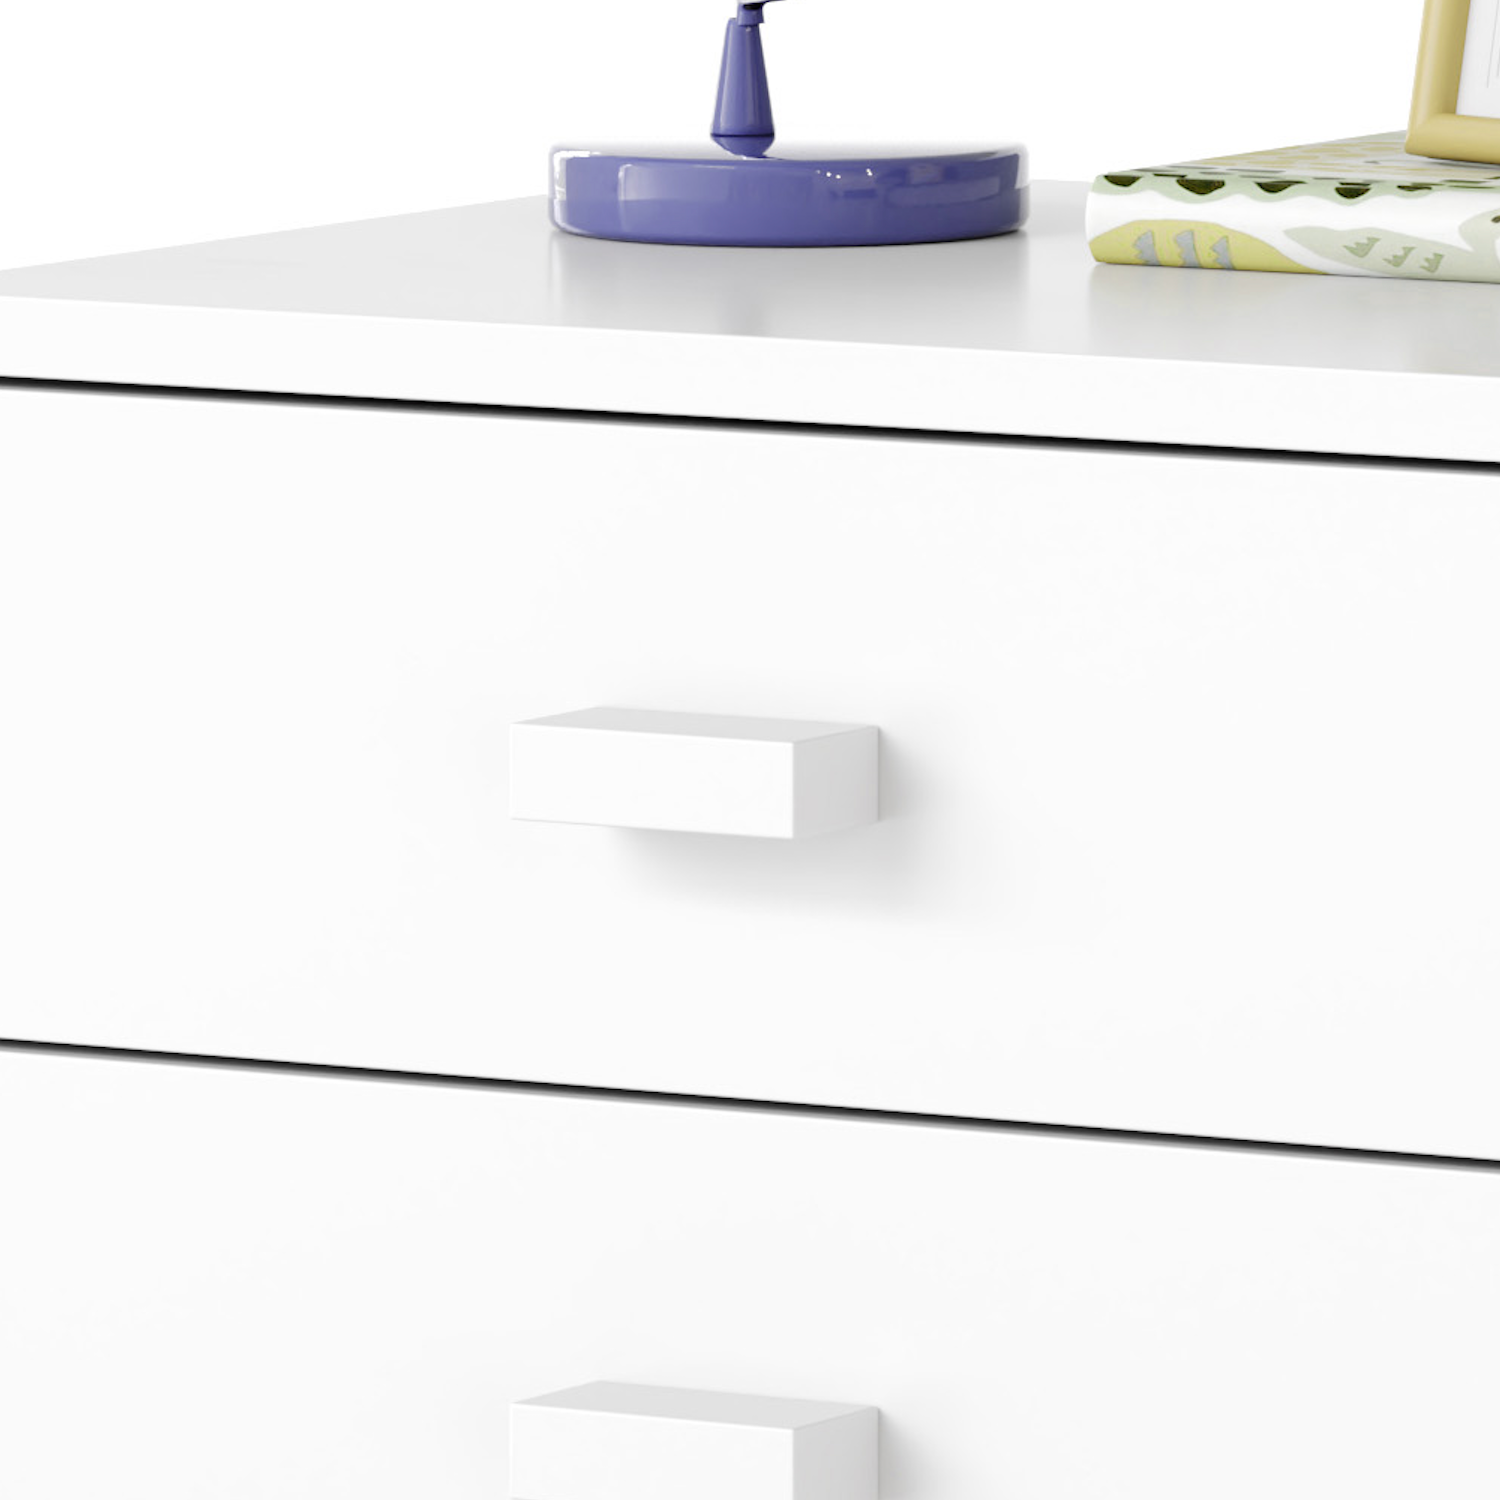 austin nightstand - block pull - white maple